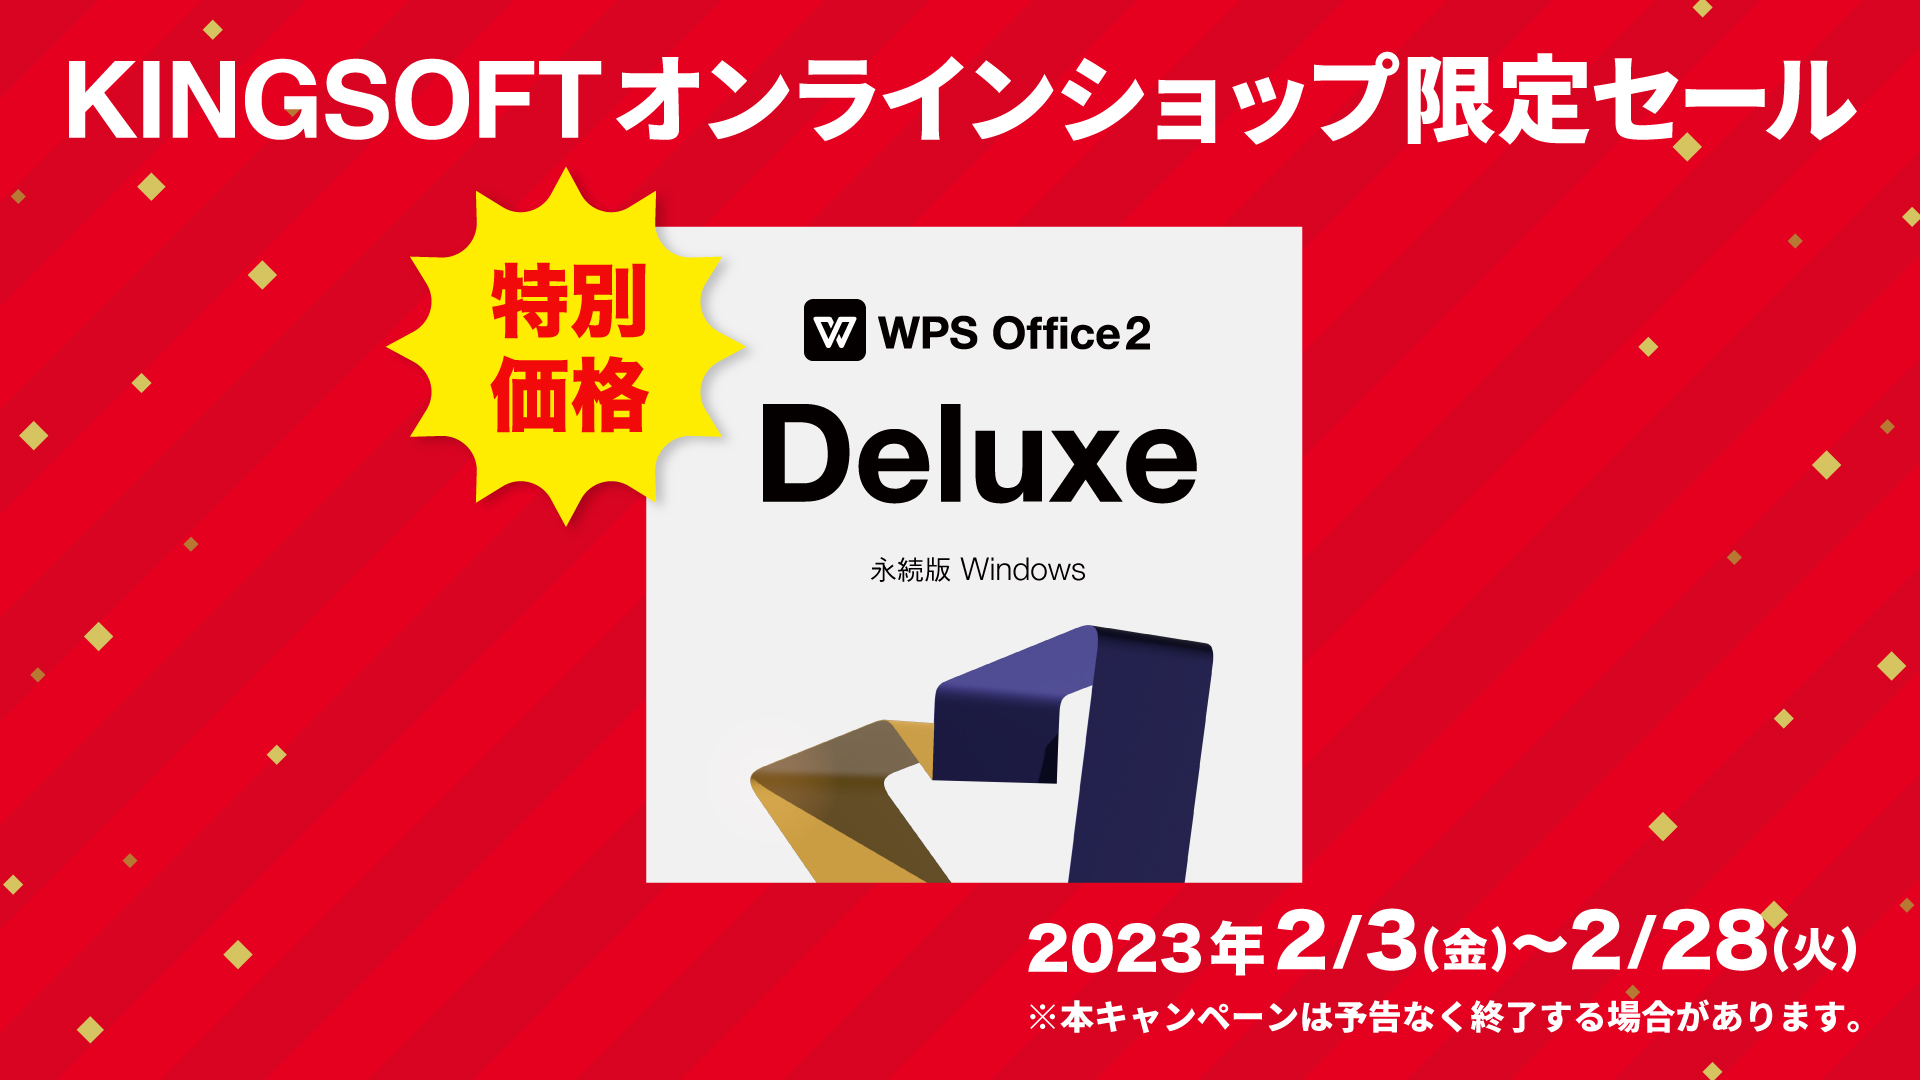 28書体の特別テーマフォントを搭載した「WPS Office 2」Deluxeをスペシャル価格で提供<br>2月28日ま